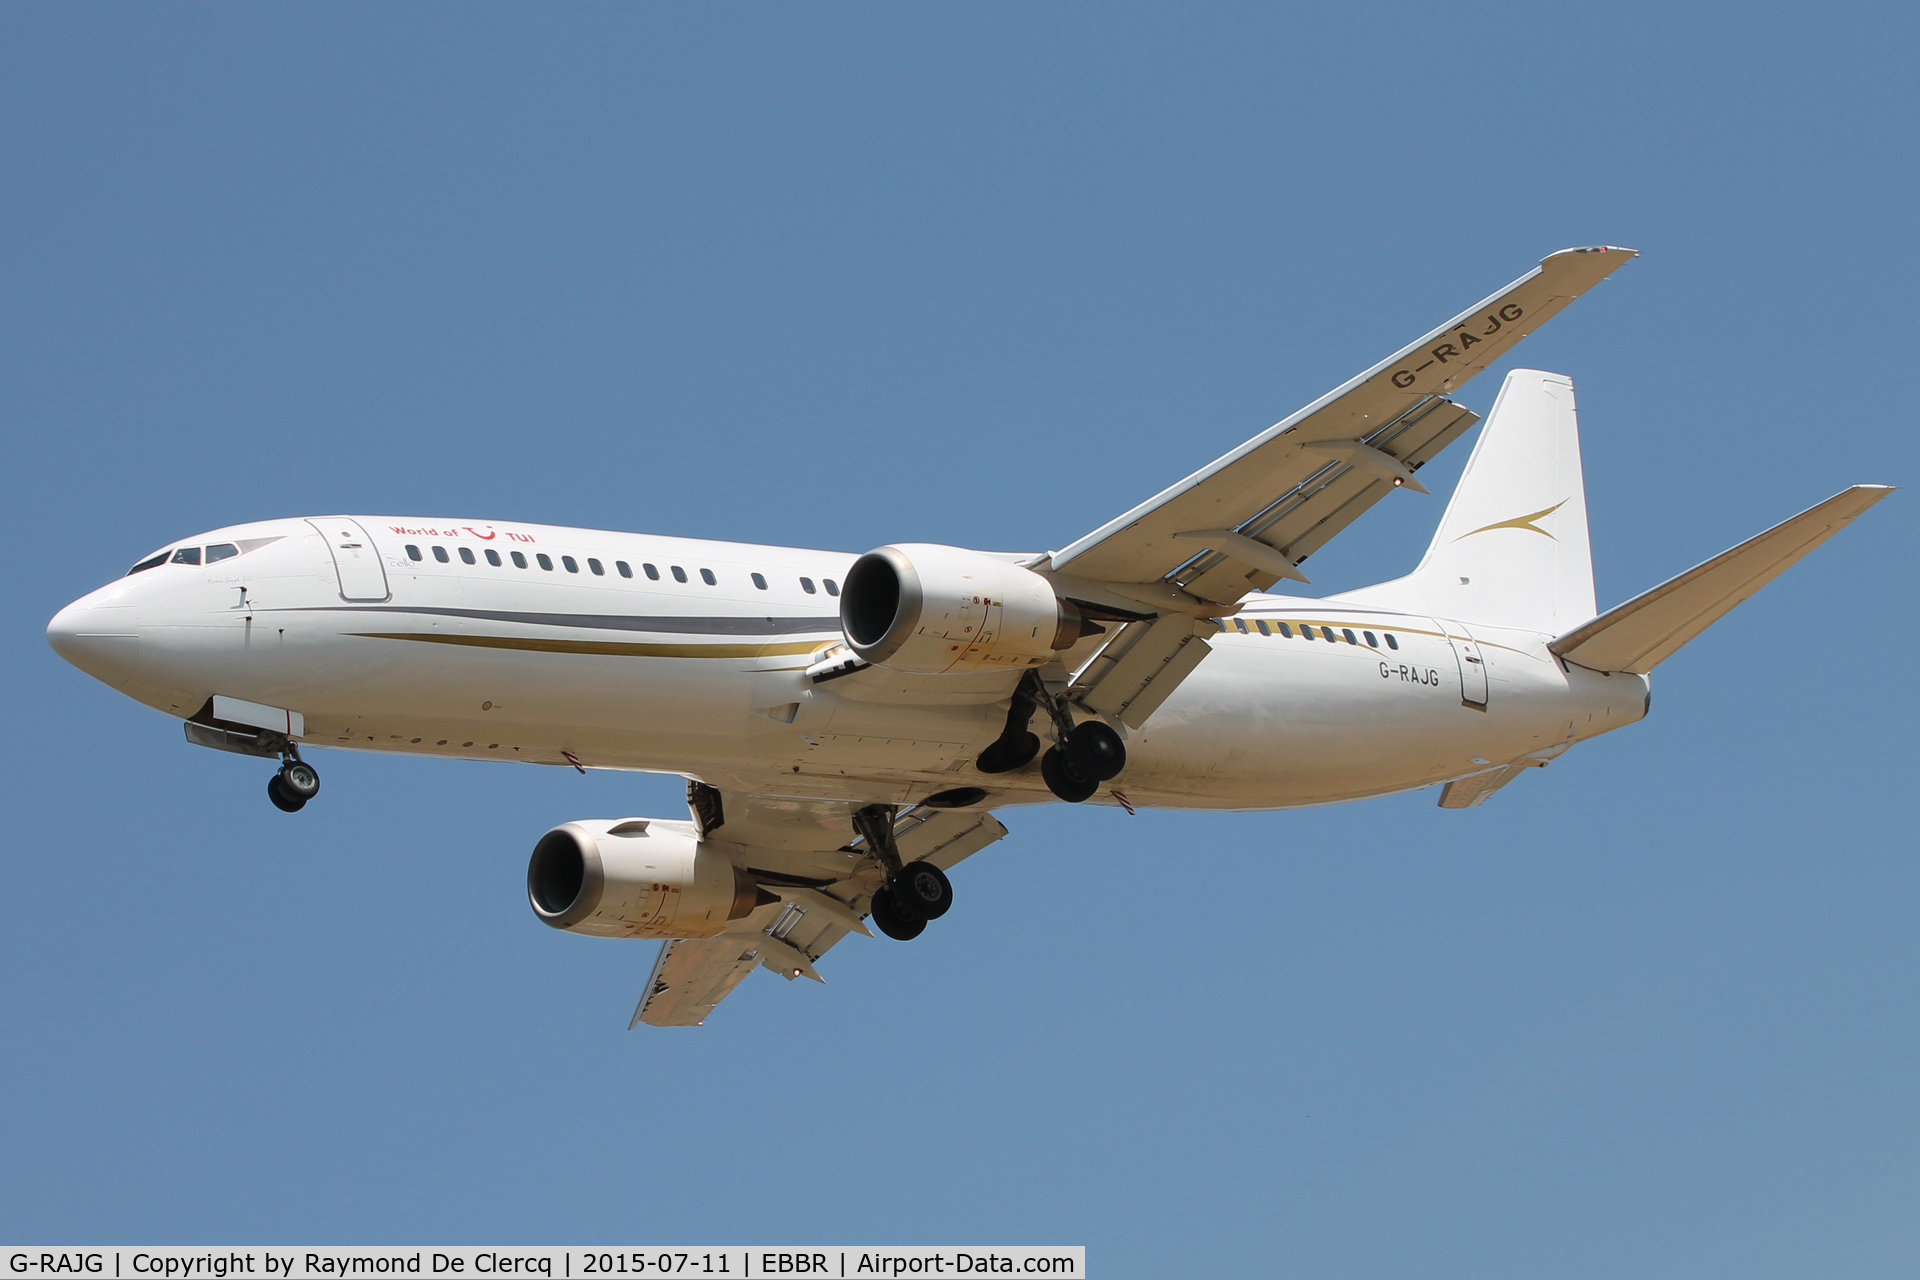 G-RAJG, 1992 Boeing 737-476 C/N 24439, Landing at Brussels Airport.